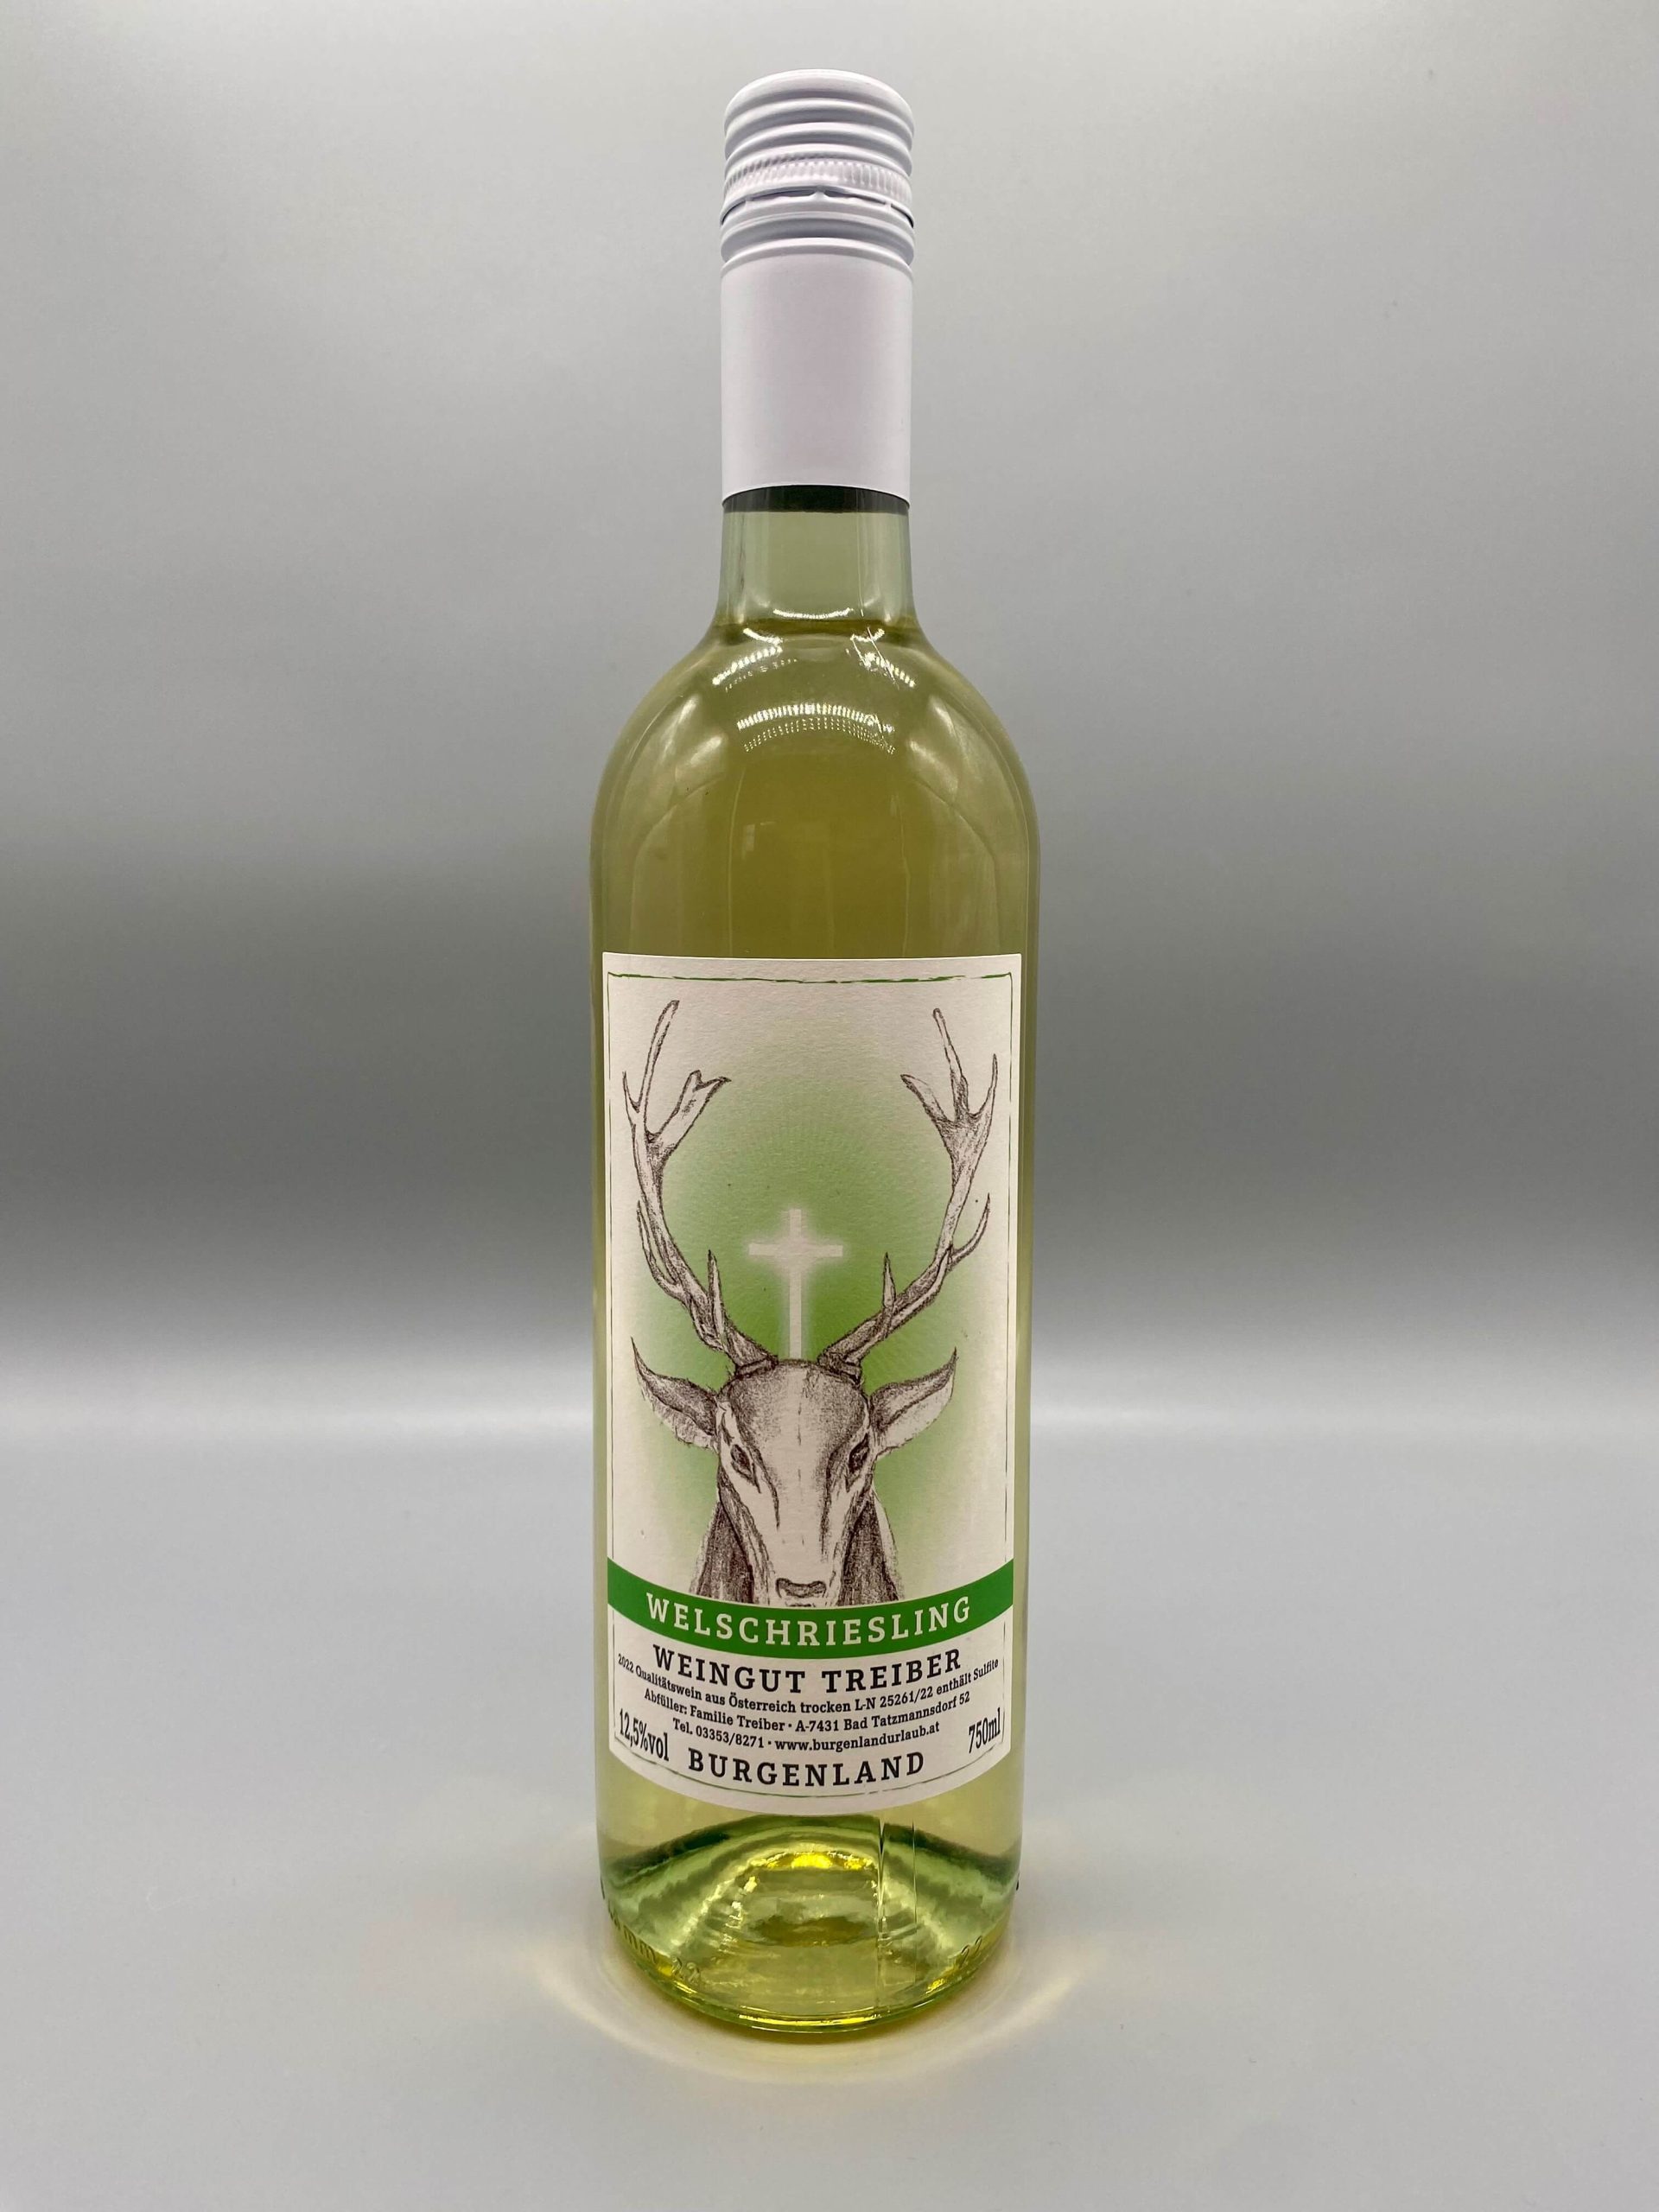 Flasche Weißwein Welschriesling von Weingut Familie Treiber mit Hirschmotiv auf dem Etikett.